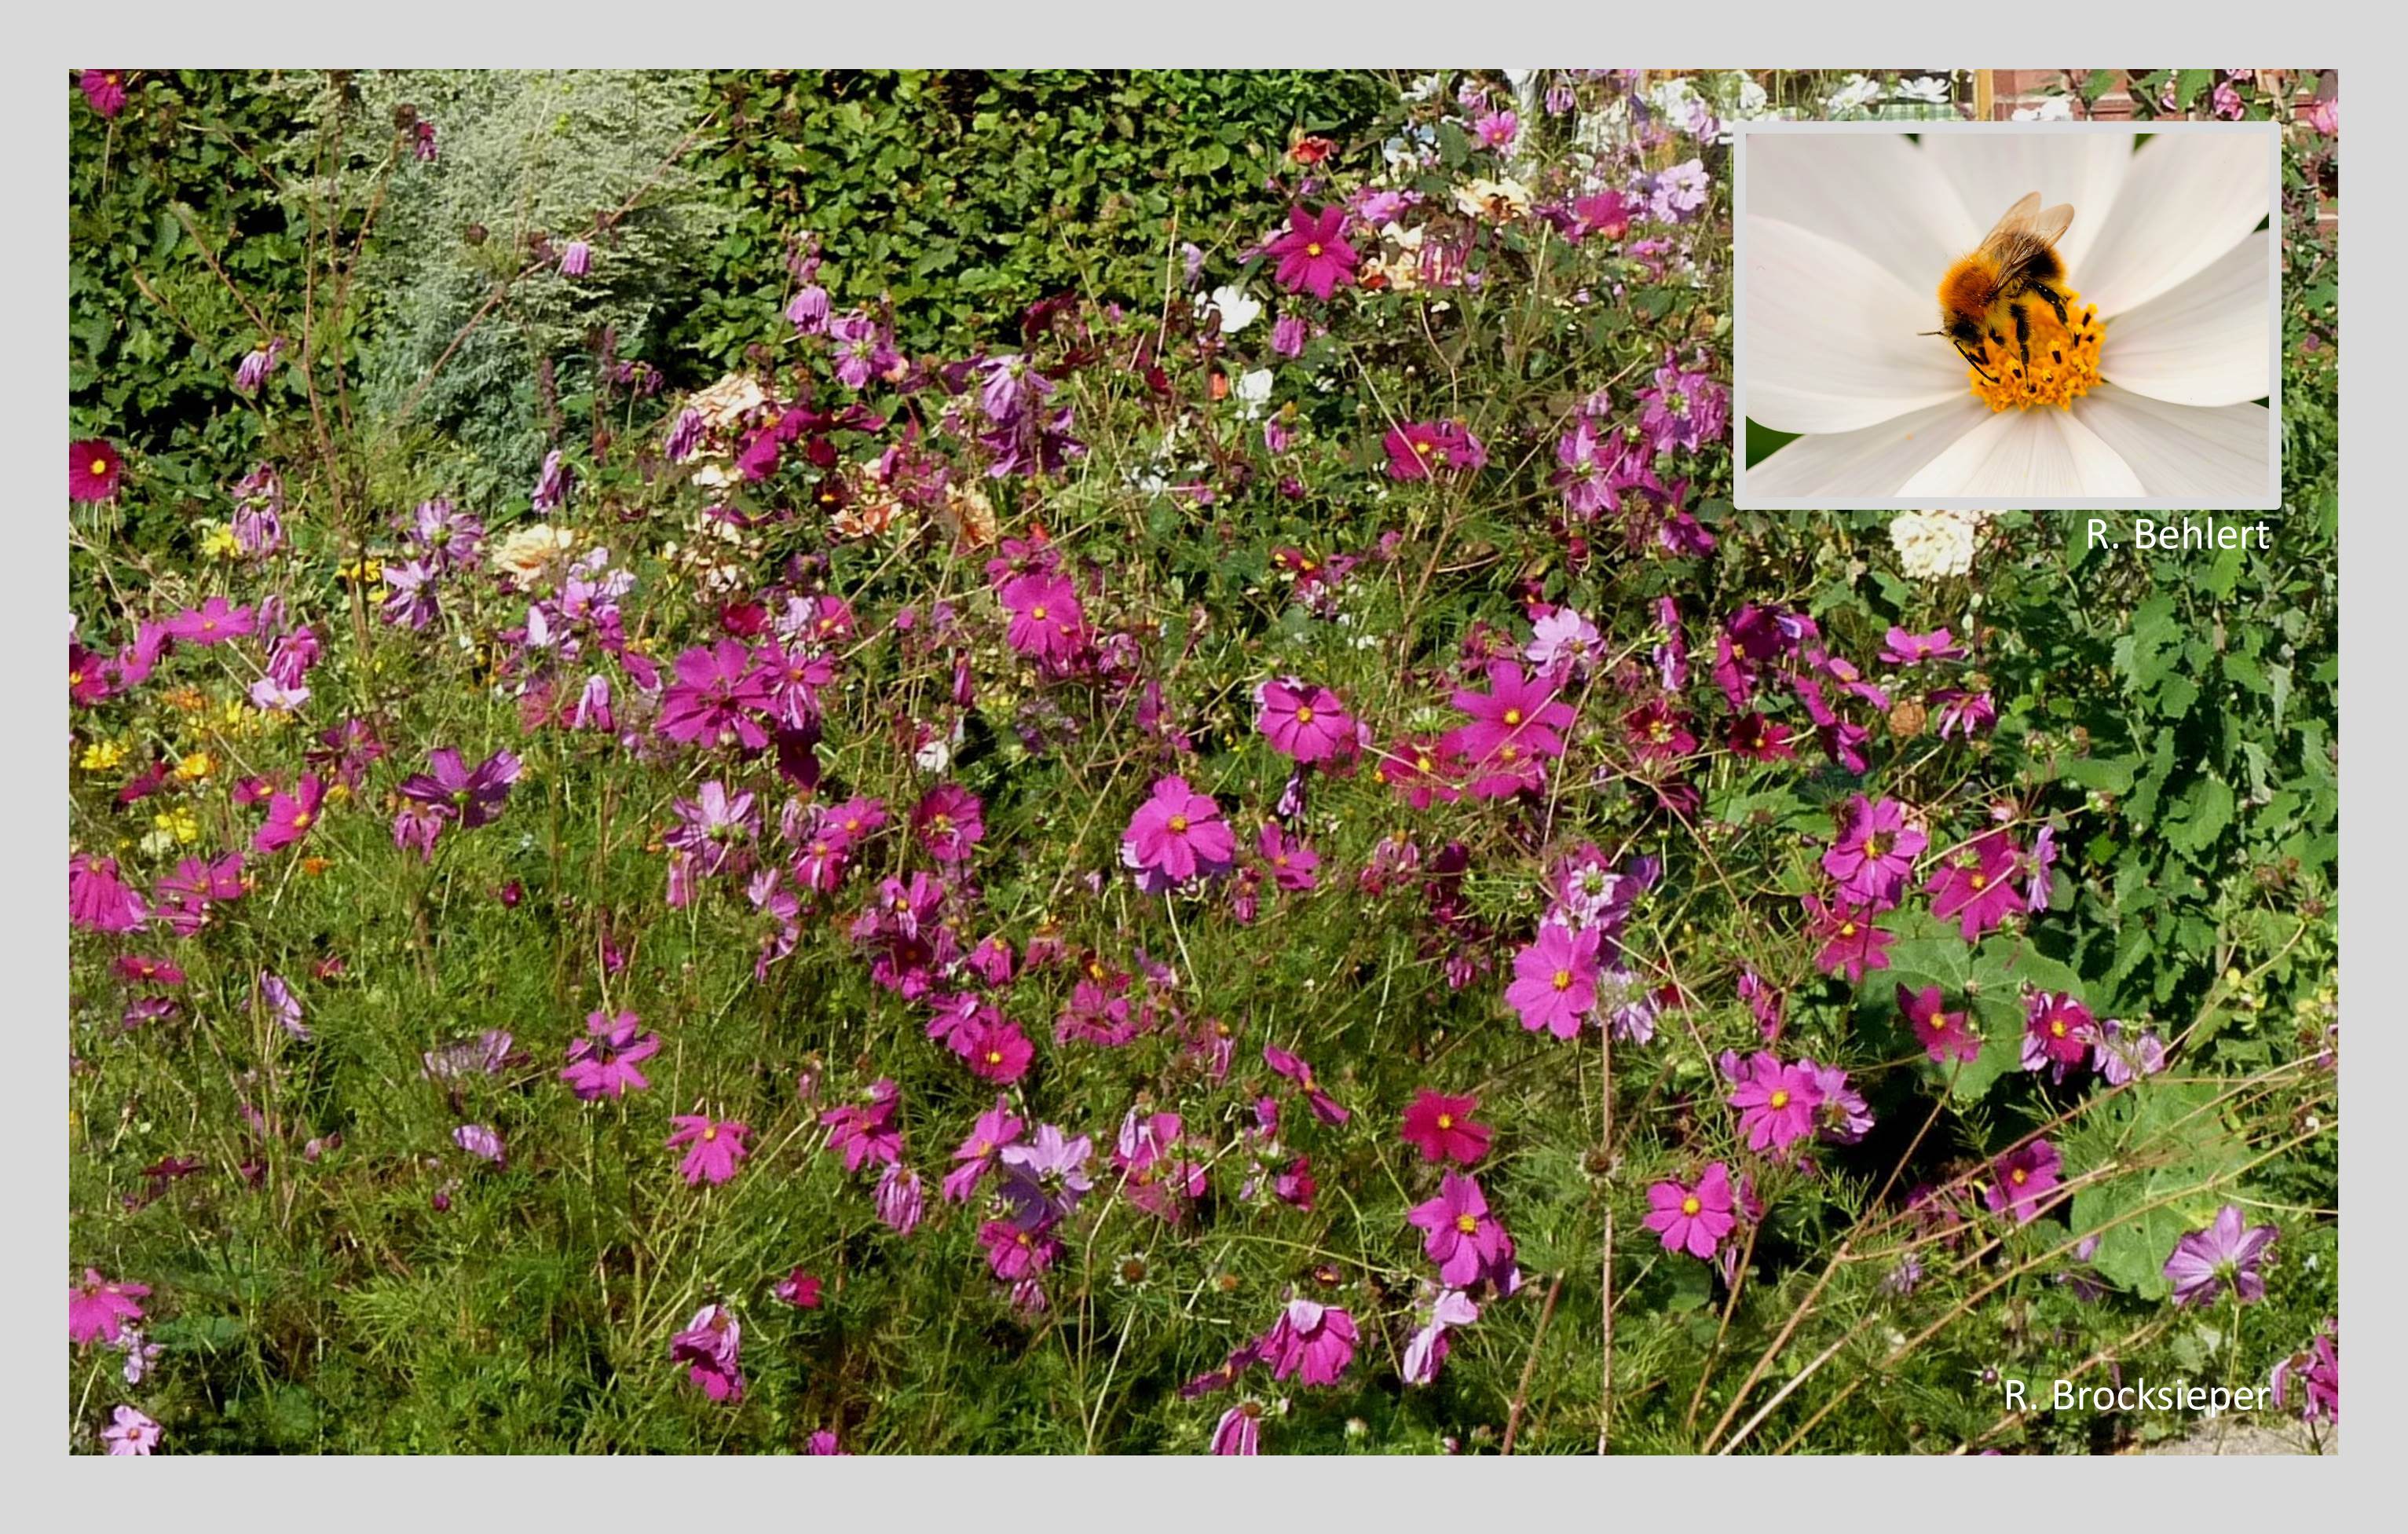 Die einjährigen Schmuckkörbchen (Cosmea spec.) werden im Frühjahr gesät und blühen in rosa, pink und weiß bis zum Frost. Sie sind ein Magnet für Schmetterlinge, Bienen und andere Insekten und auch gut als Schnittblumen geeignet. Sie samen selbst aus. Die Schokoladen-blume (Cosmea atrosanguineus) gehört ebenfalls zu den Cosmeen.